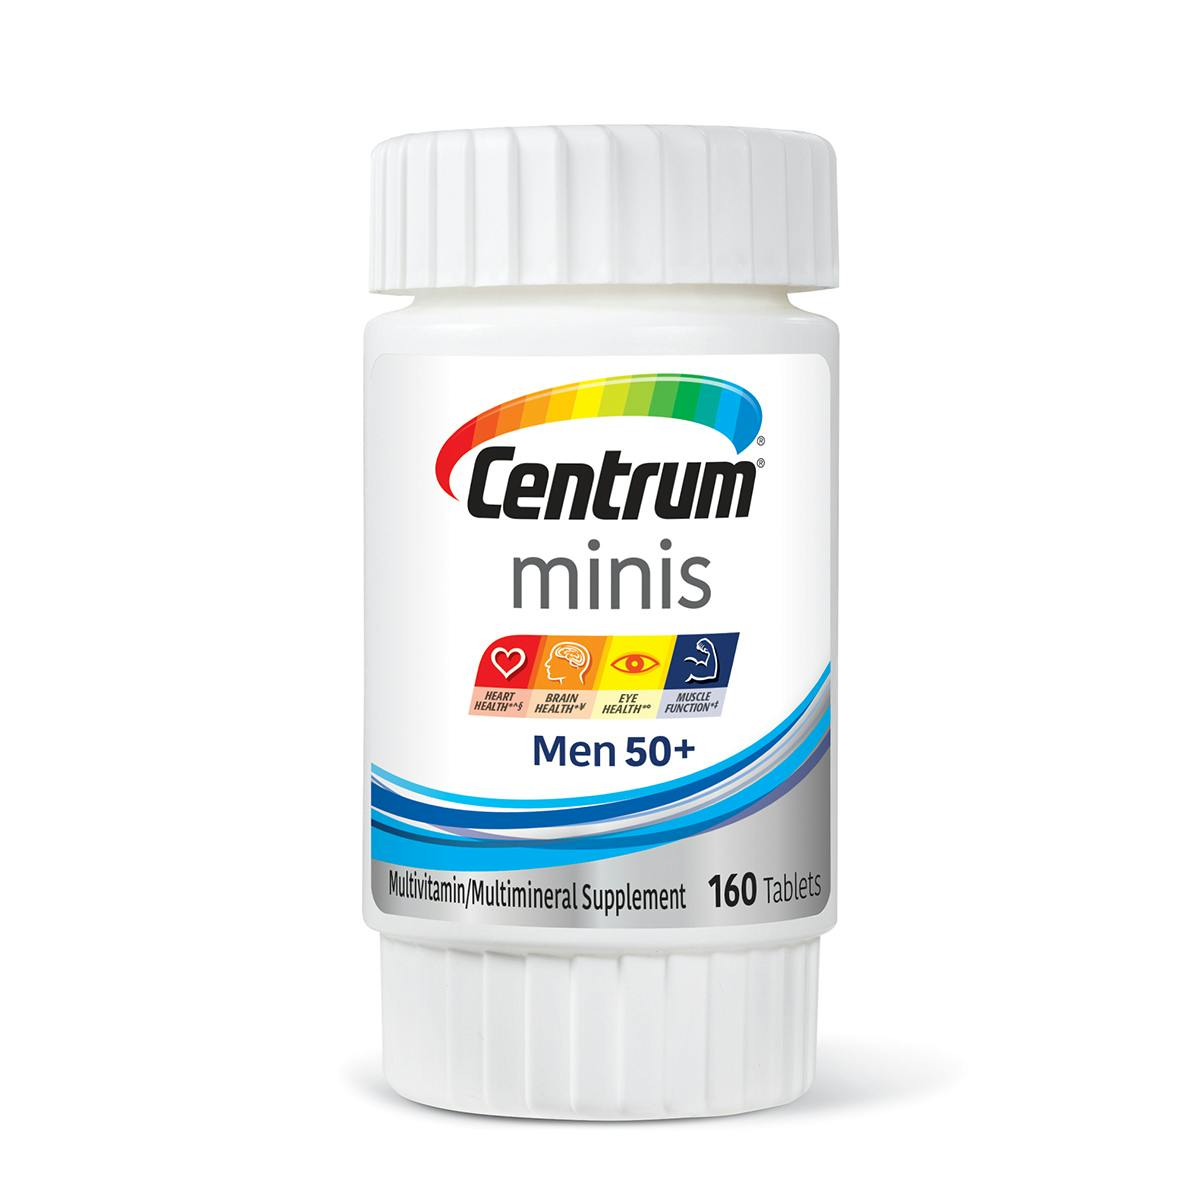 Bottle of Centrum Minis Men 50plus multivitamins